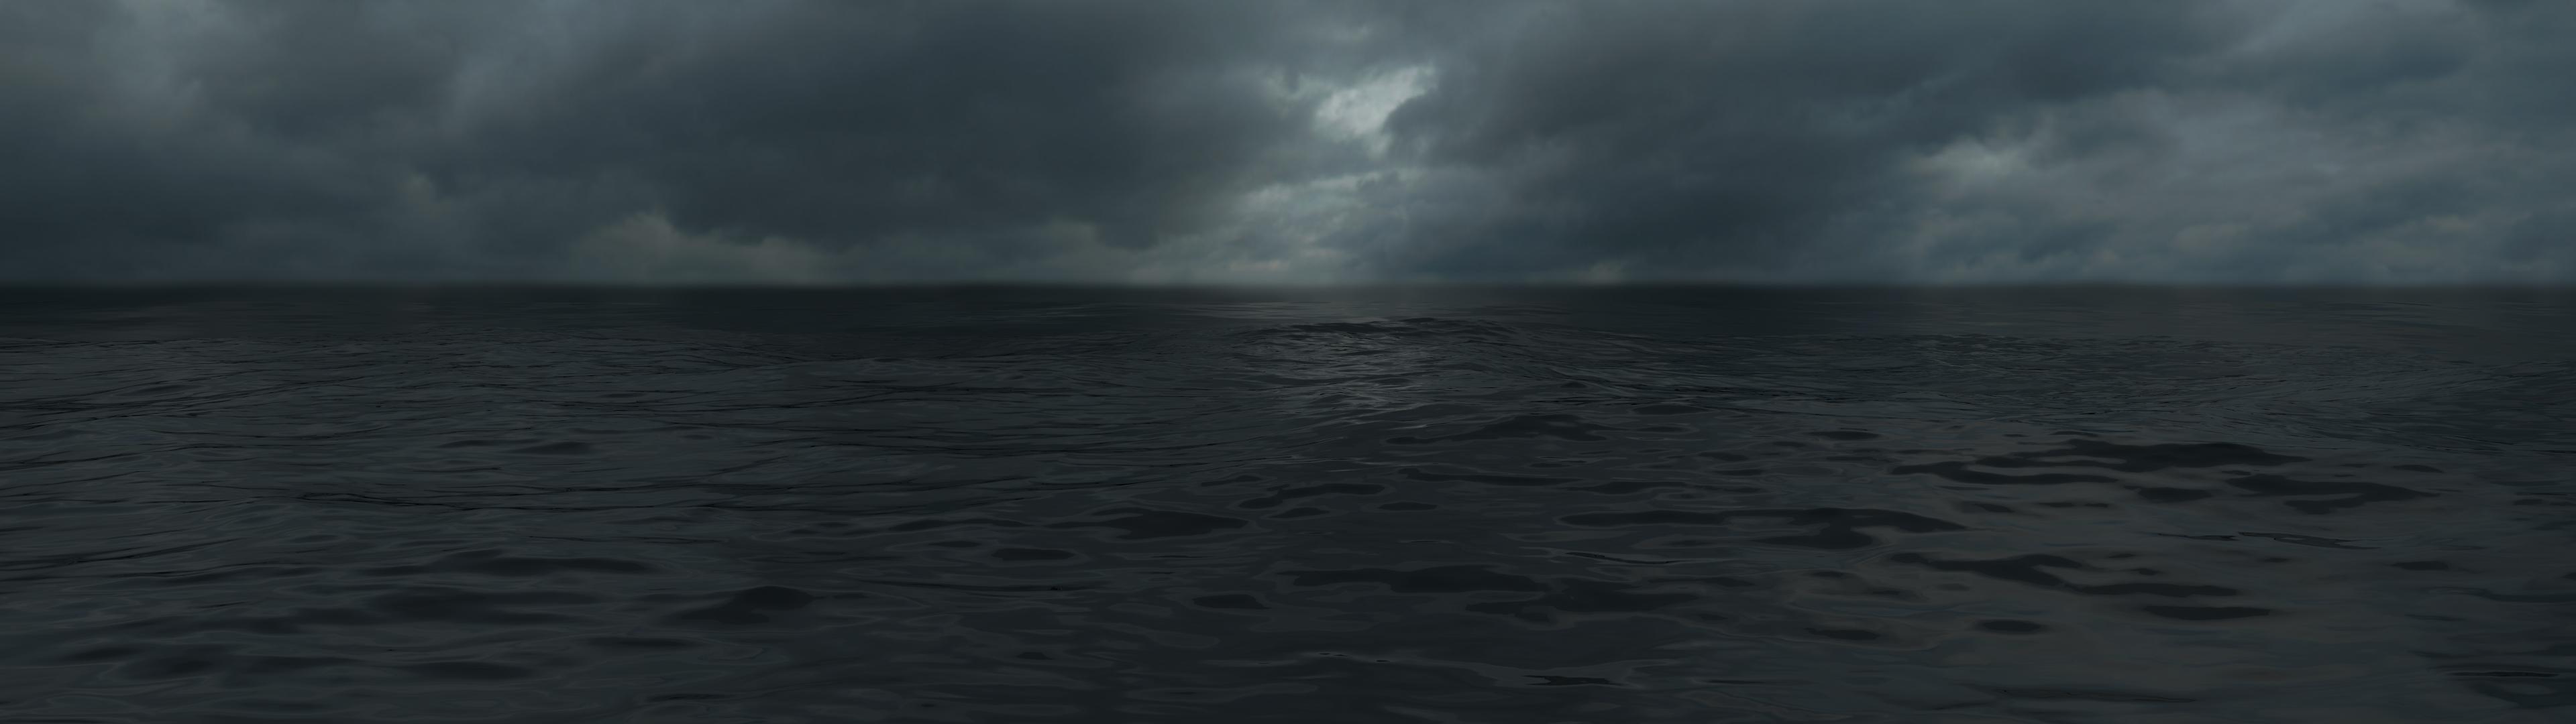 Dark clouds over sea [3840x1080] (two 1080 monitors)